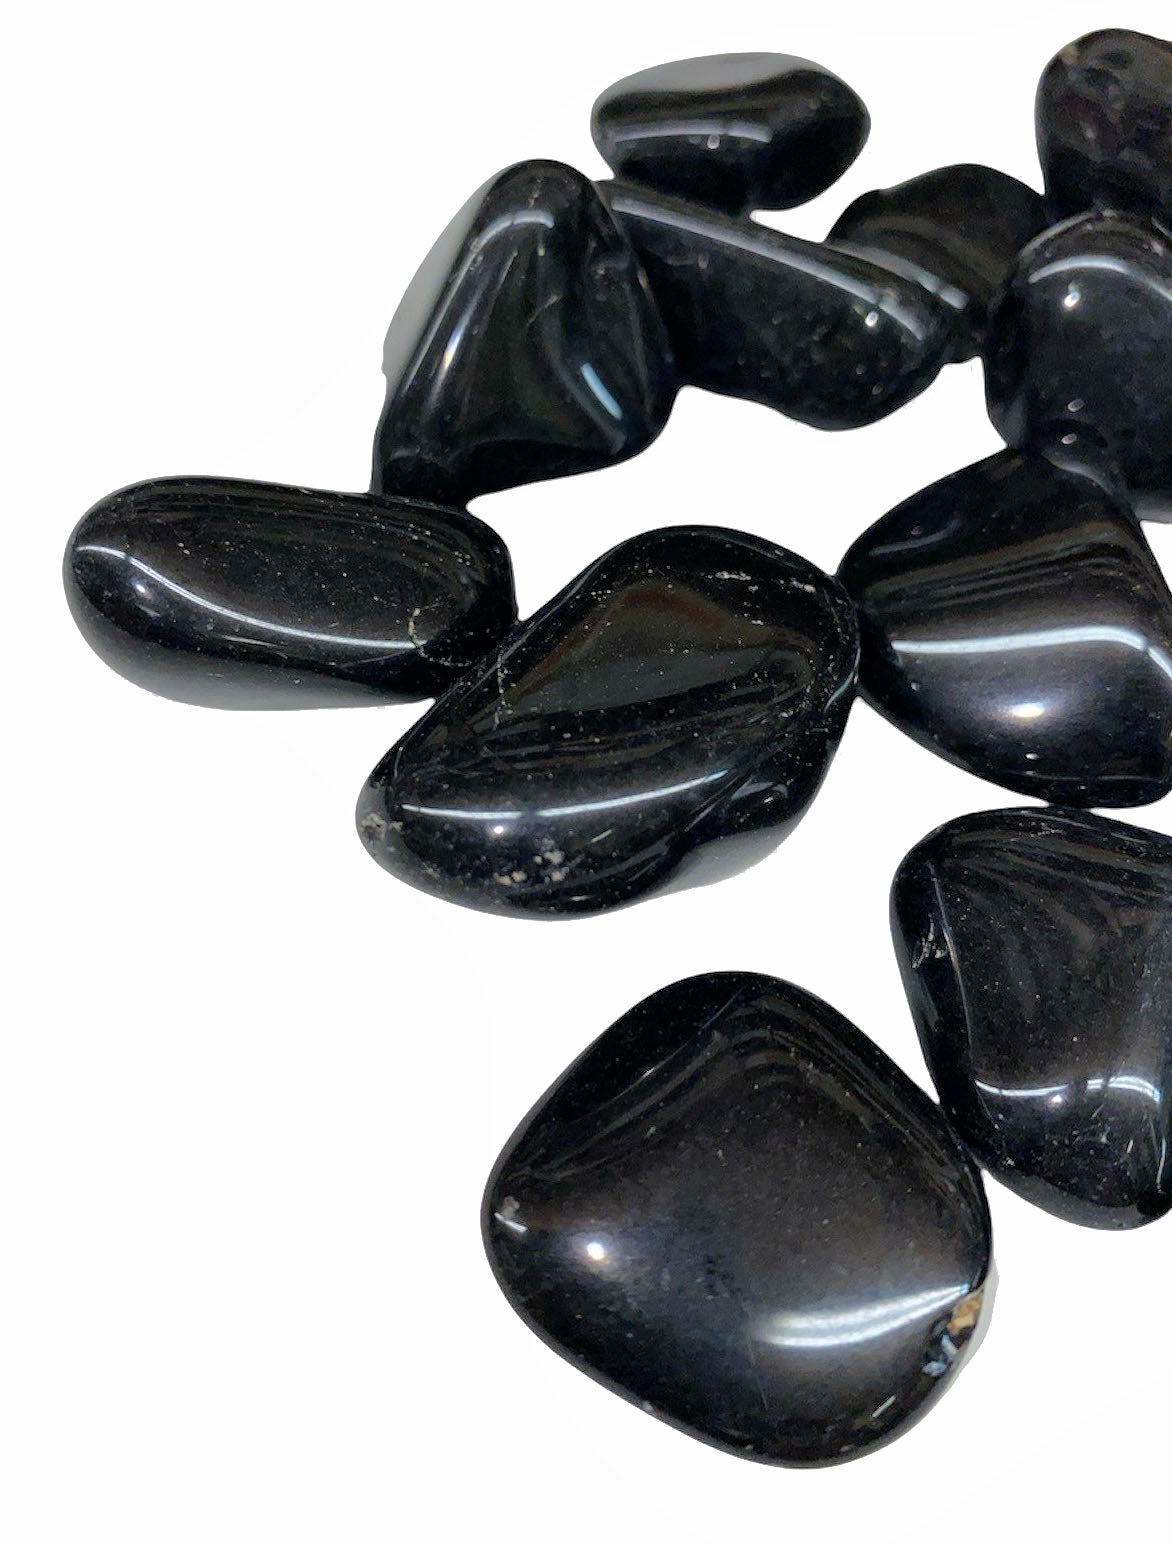 Black Obsidian Tumbled Stones QA - 20 to 30mm - 1 lb - Brazil